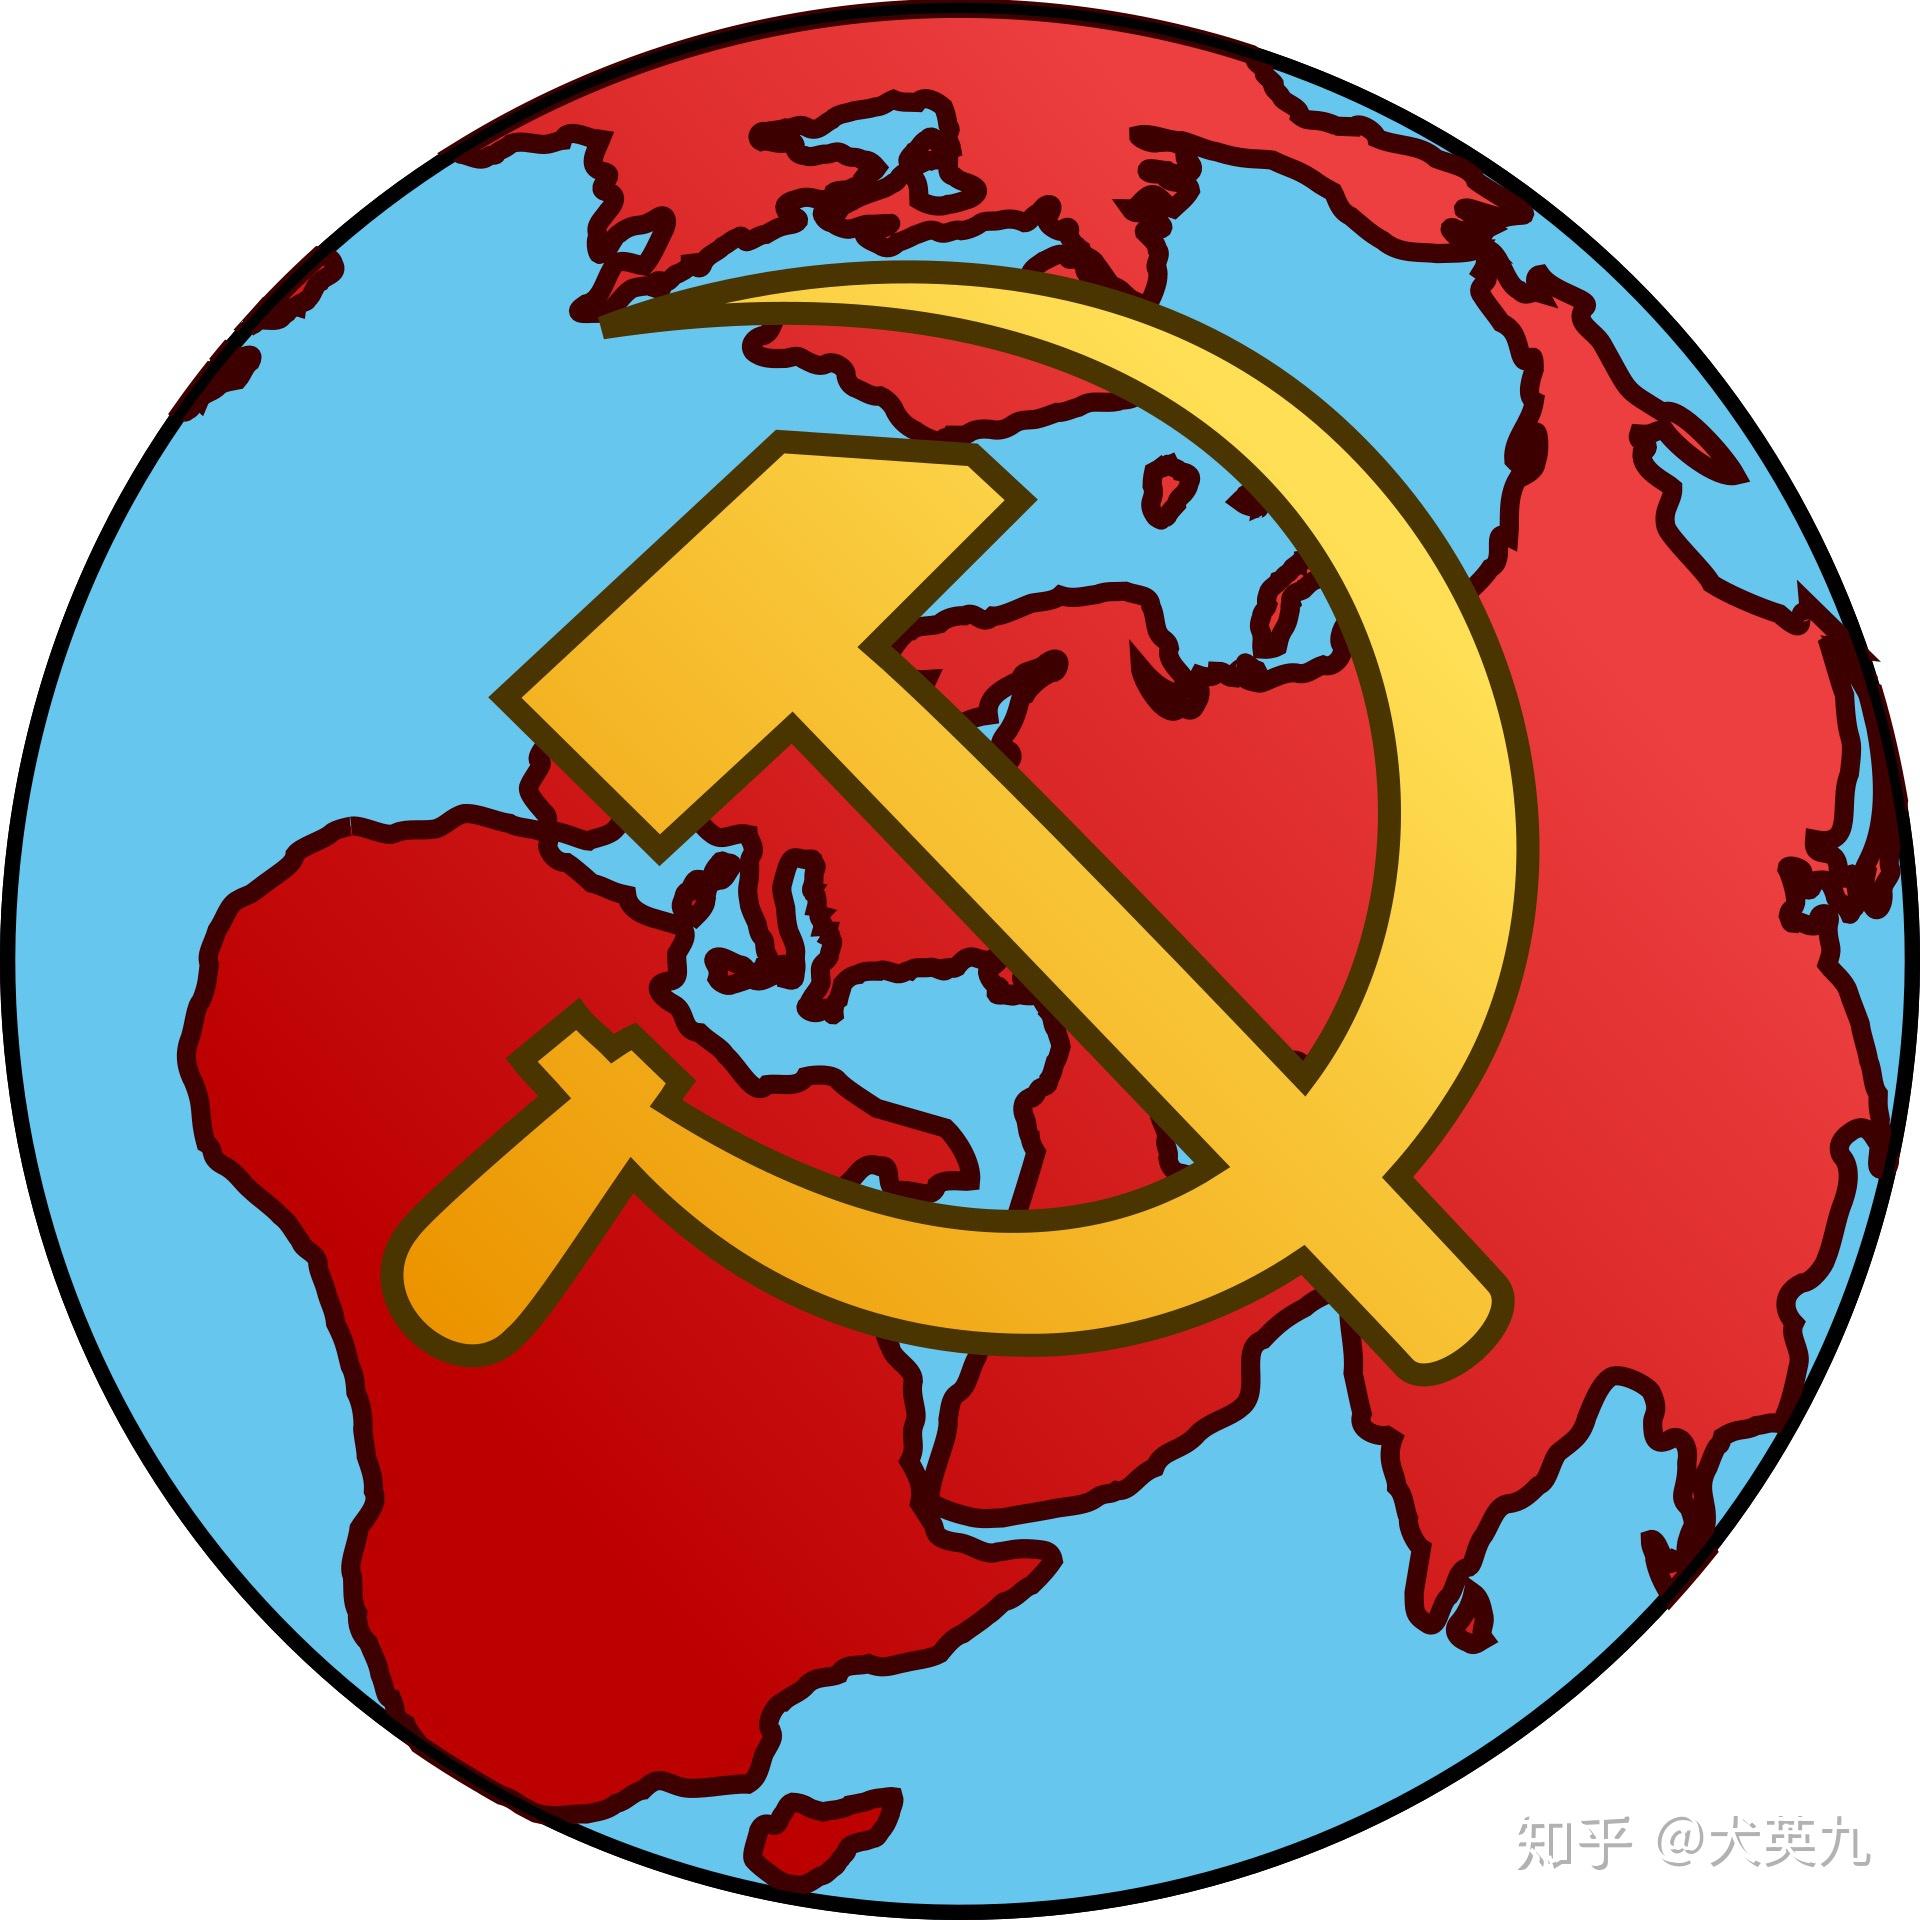 共产国际 标志图片